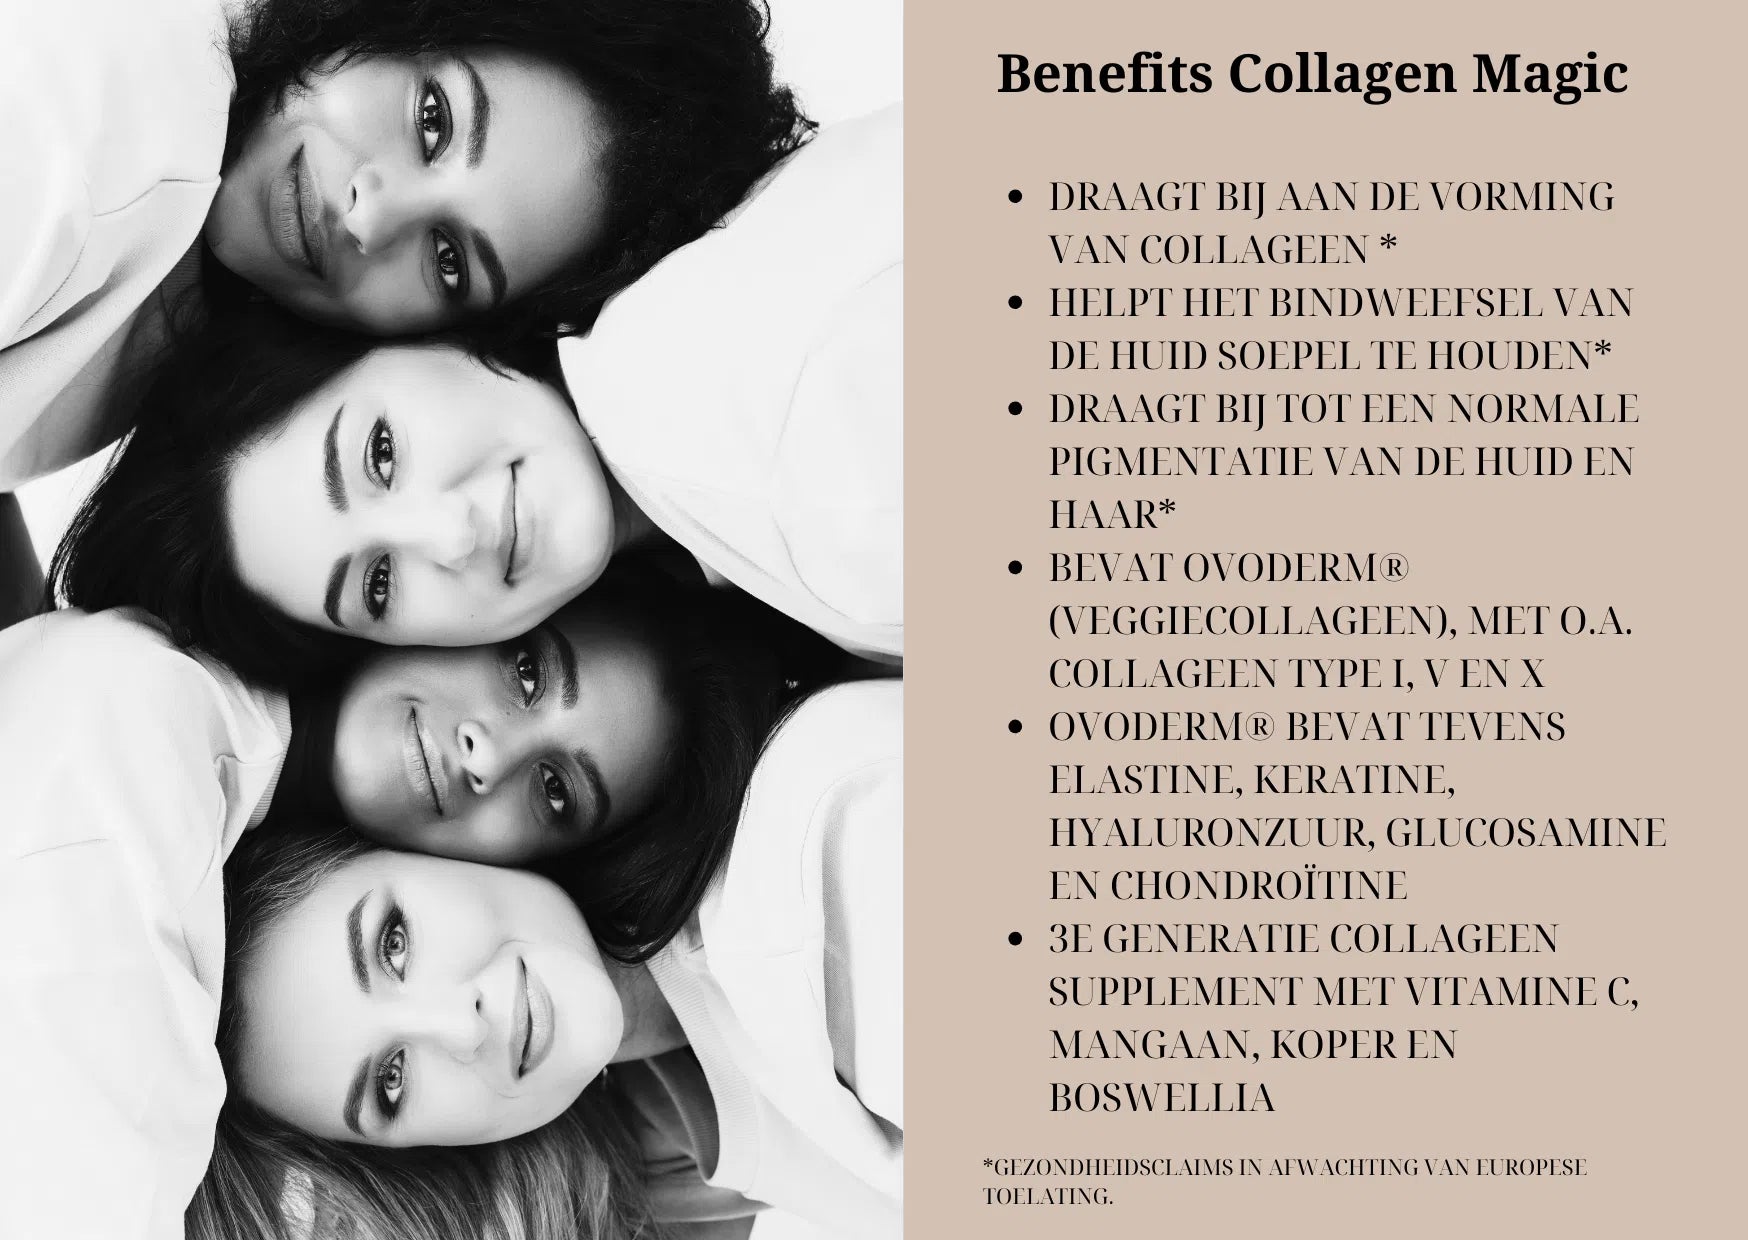 Collagen Magic: next level collageen - Premium, natuurlijke supplementen van BeYouthy -  Shop nu op BeYouthy